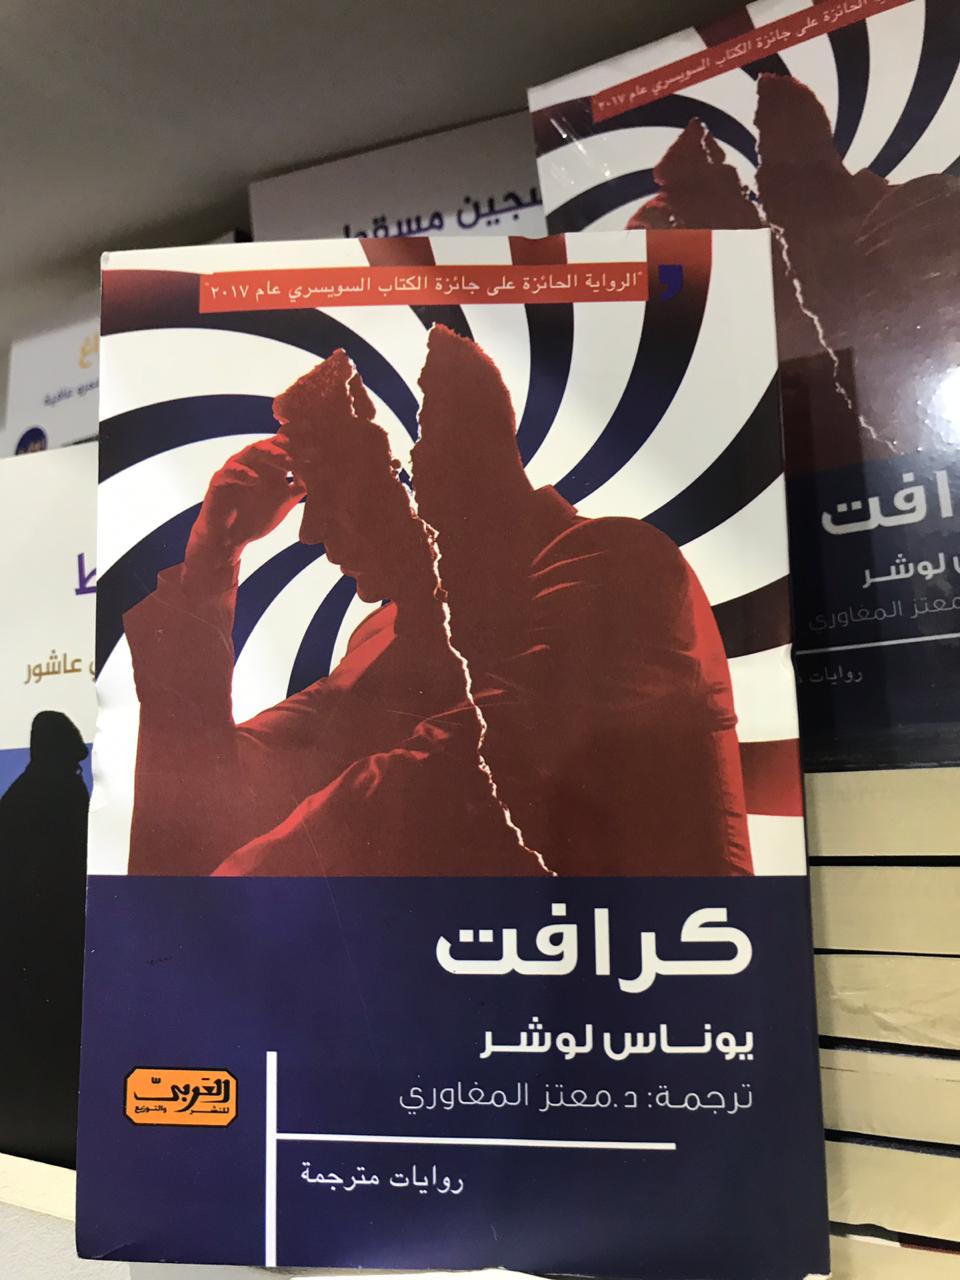 الكتب الأكثر مبيعا فى معرض القاهرة للكتاب (8)